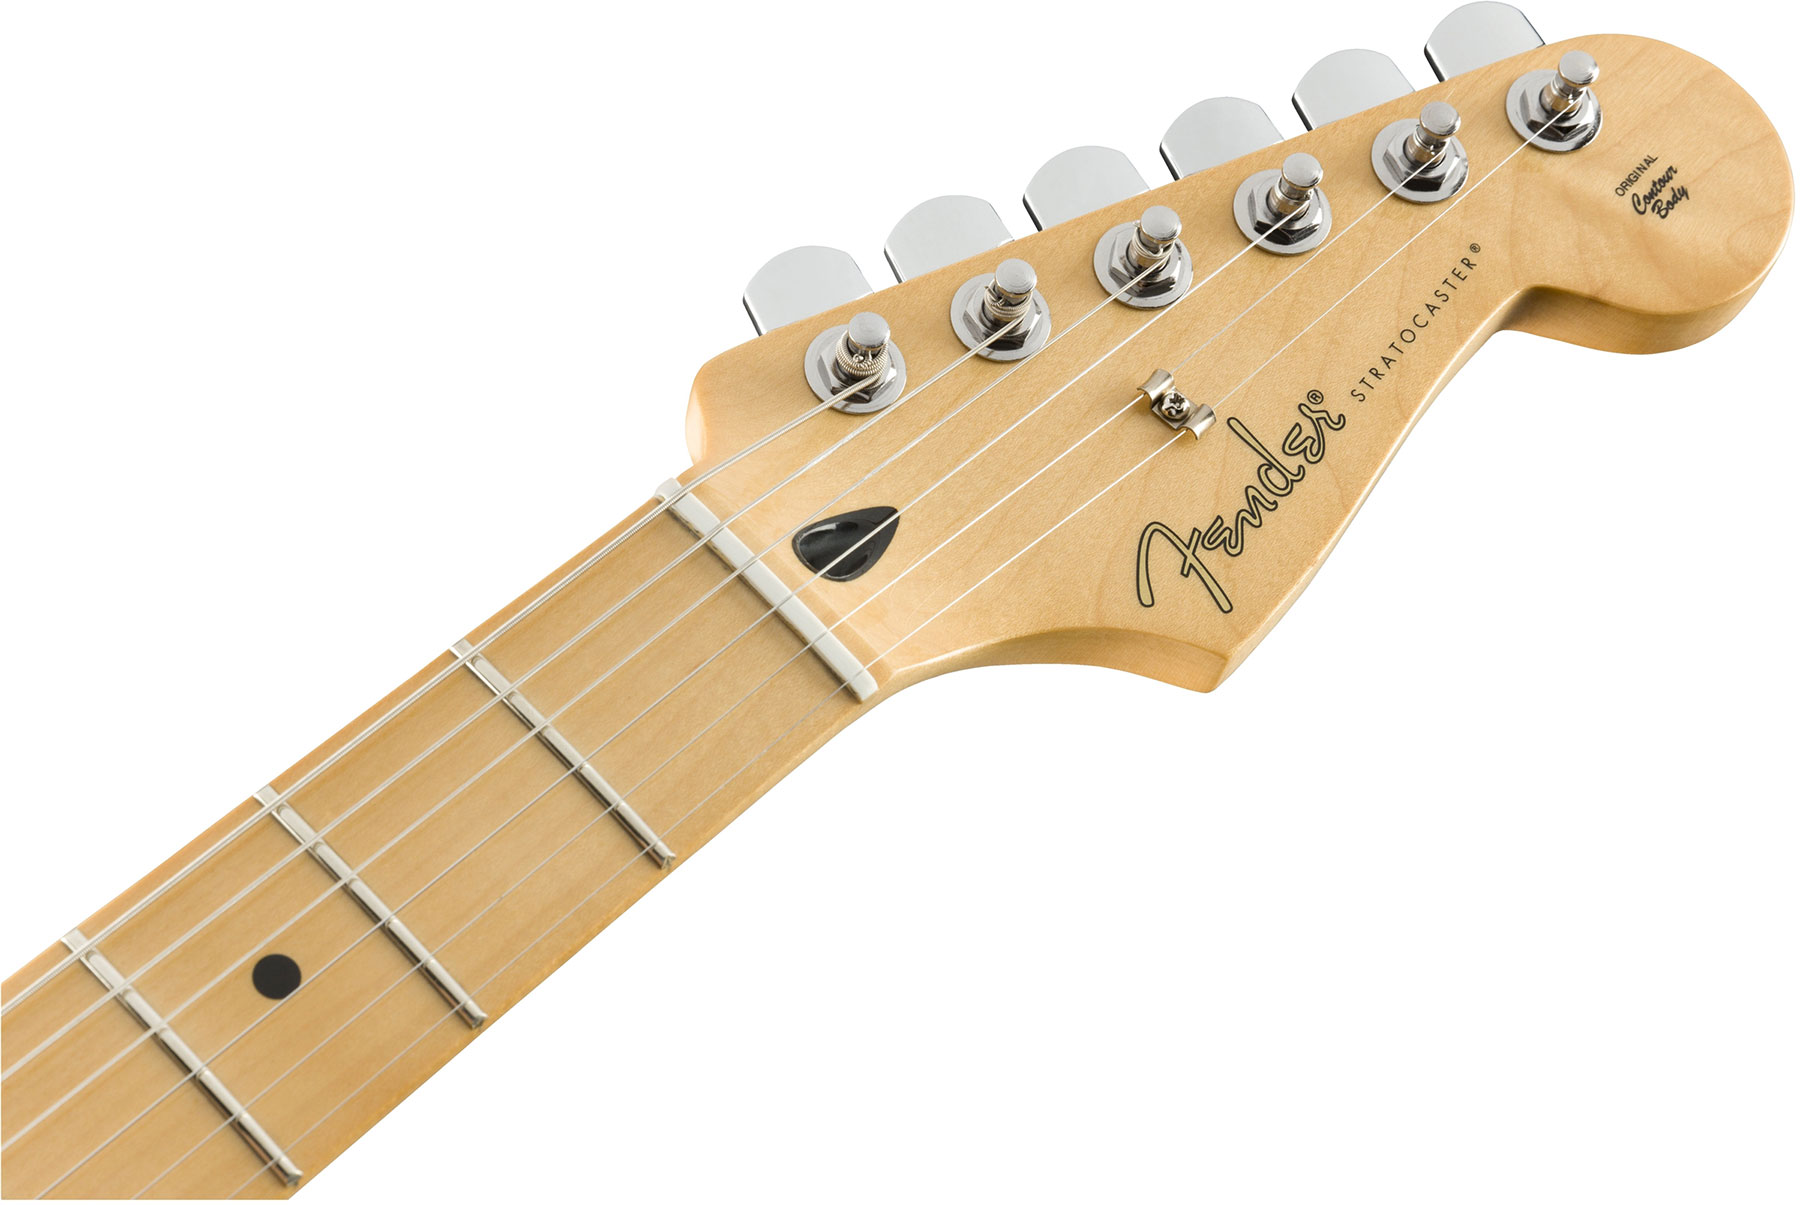 Fender Strat Player Plus Top Mex Hss Mn - Aged Cherry Burst - Elektrische gitaar in Str-vorm - Variation 3